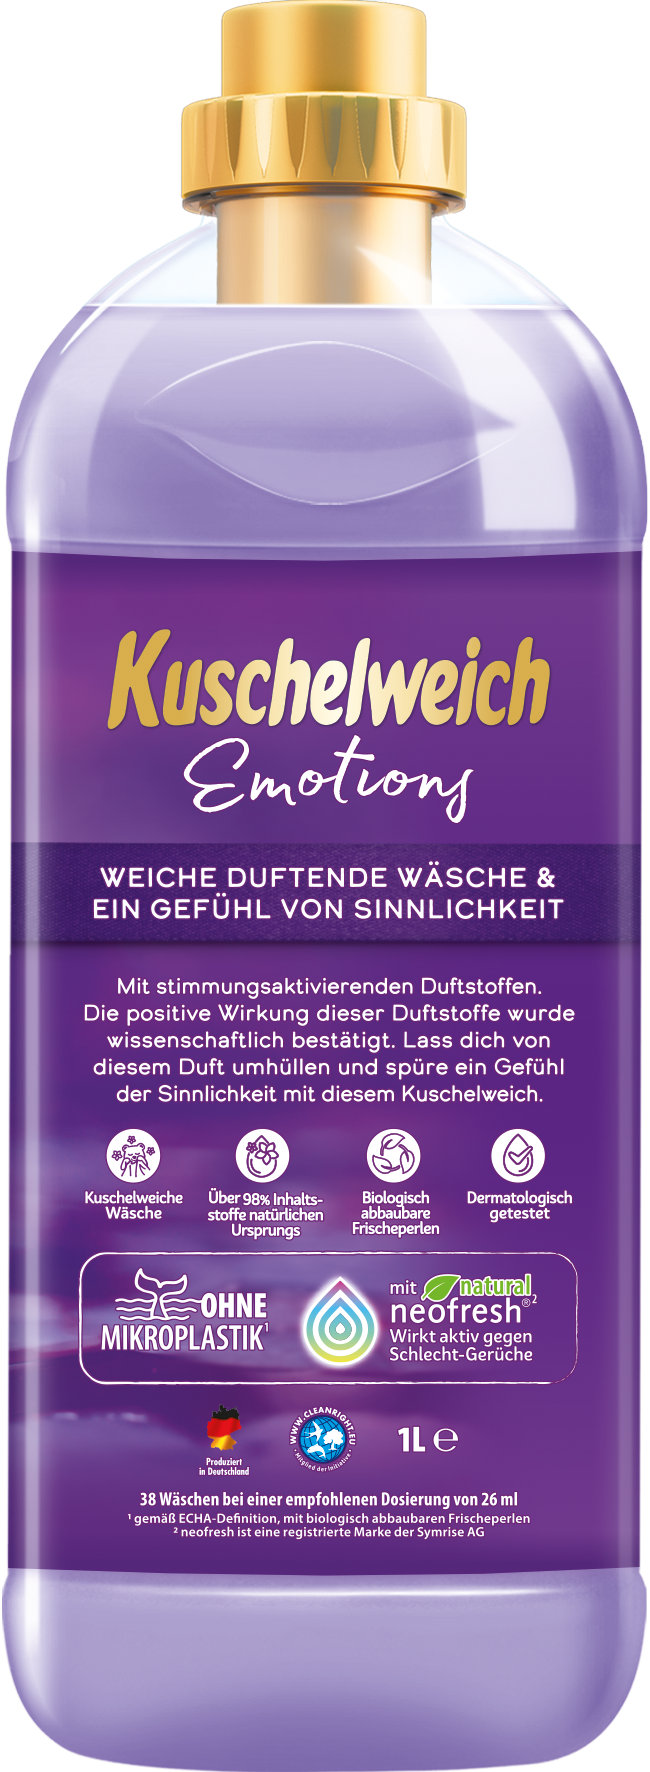 Kuschelweich Weichspüler Emotions